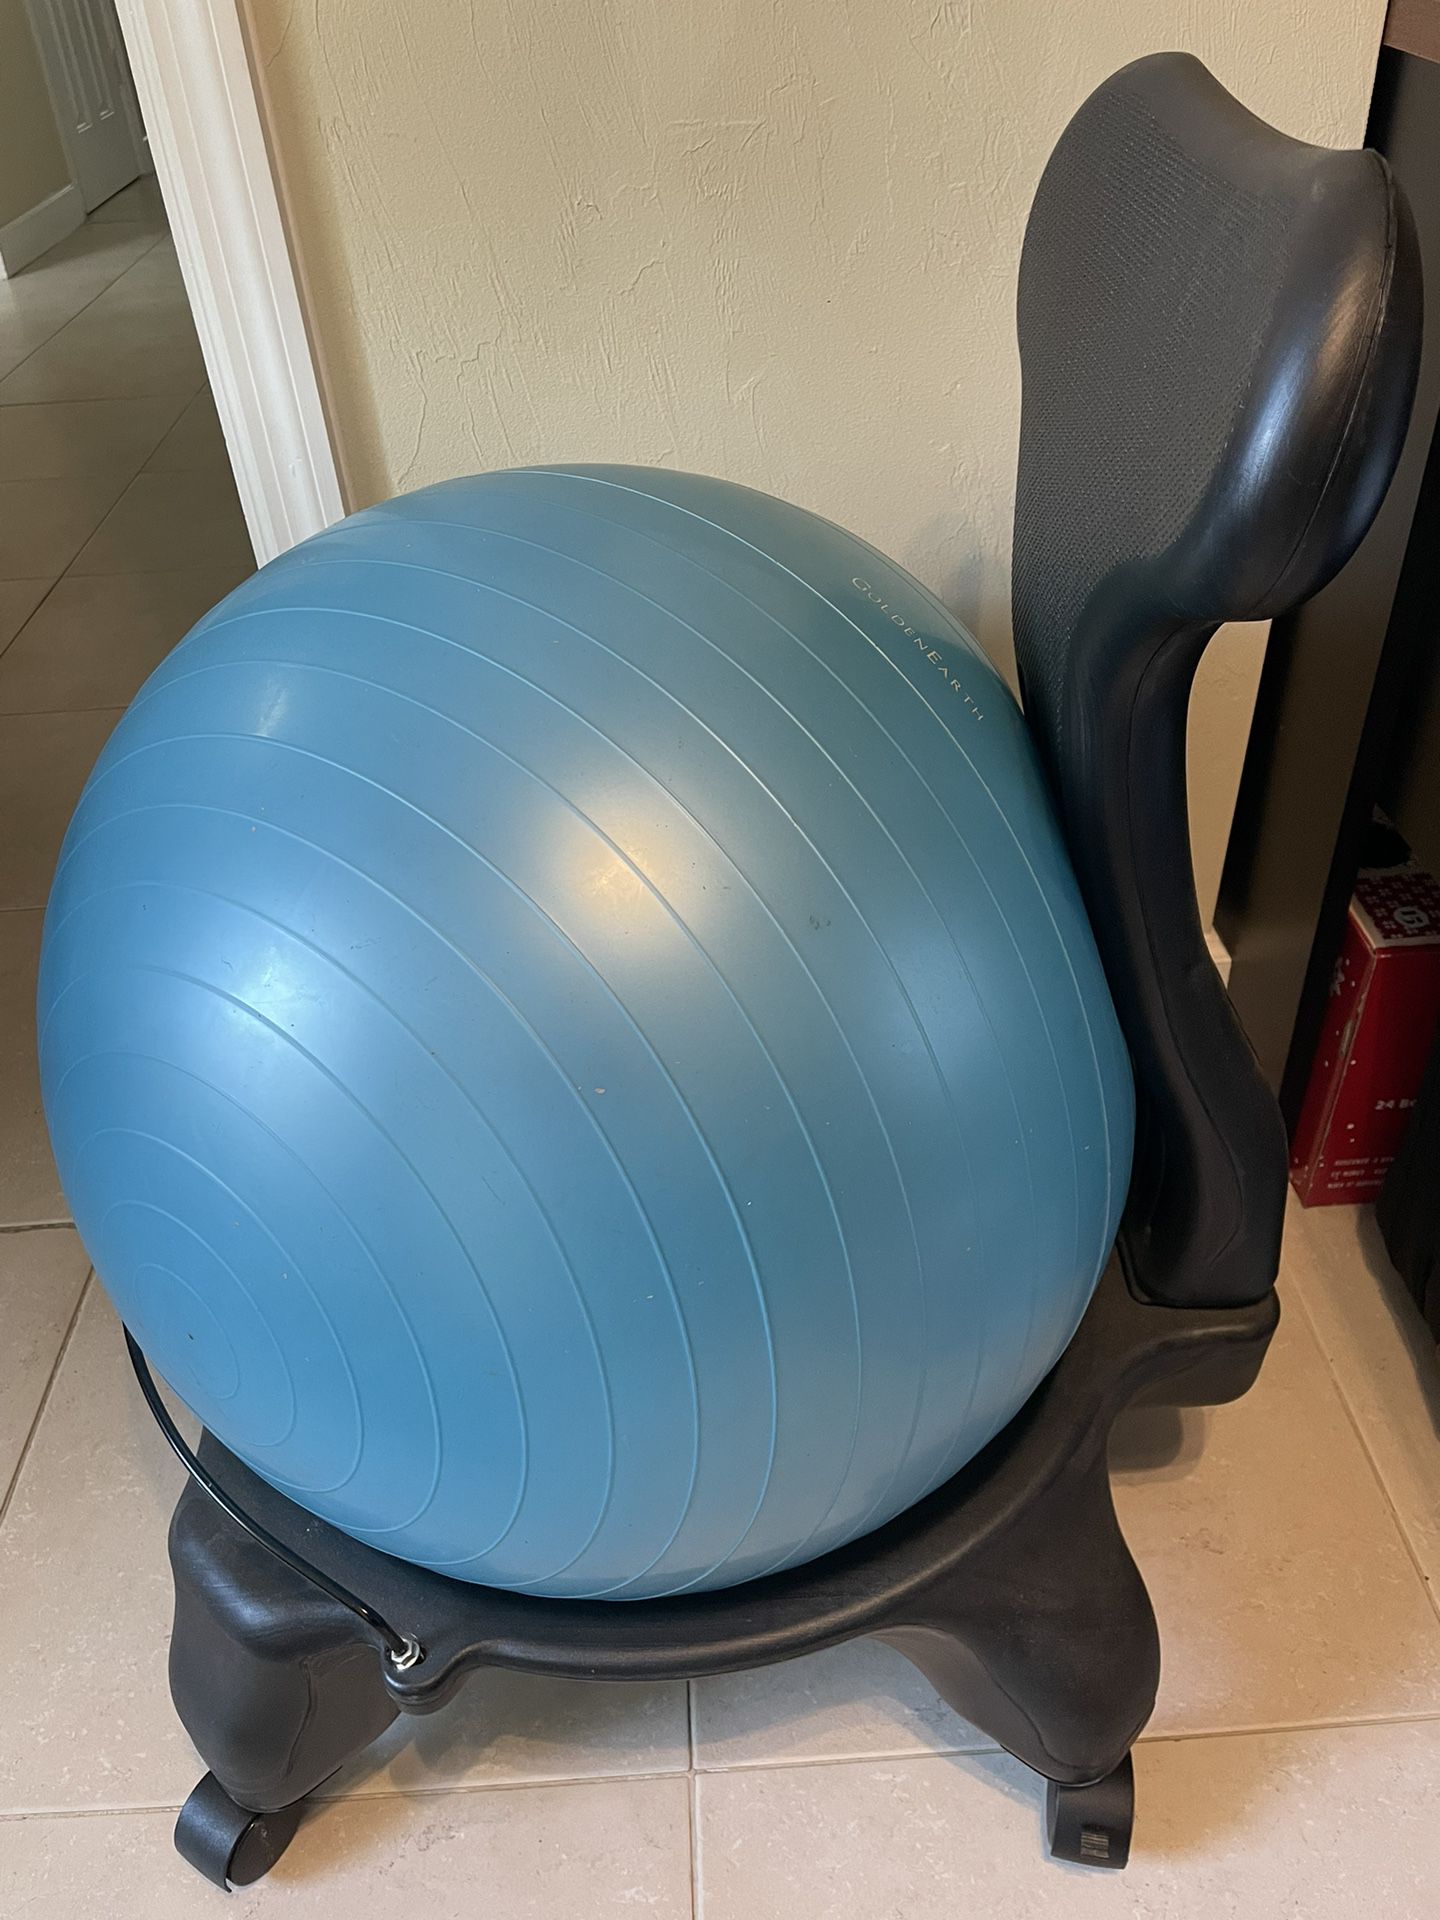 Stability Ball Chair